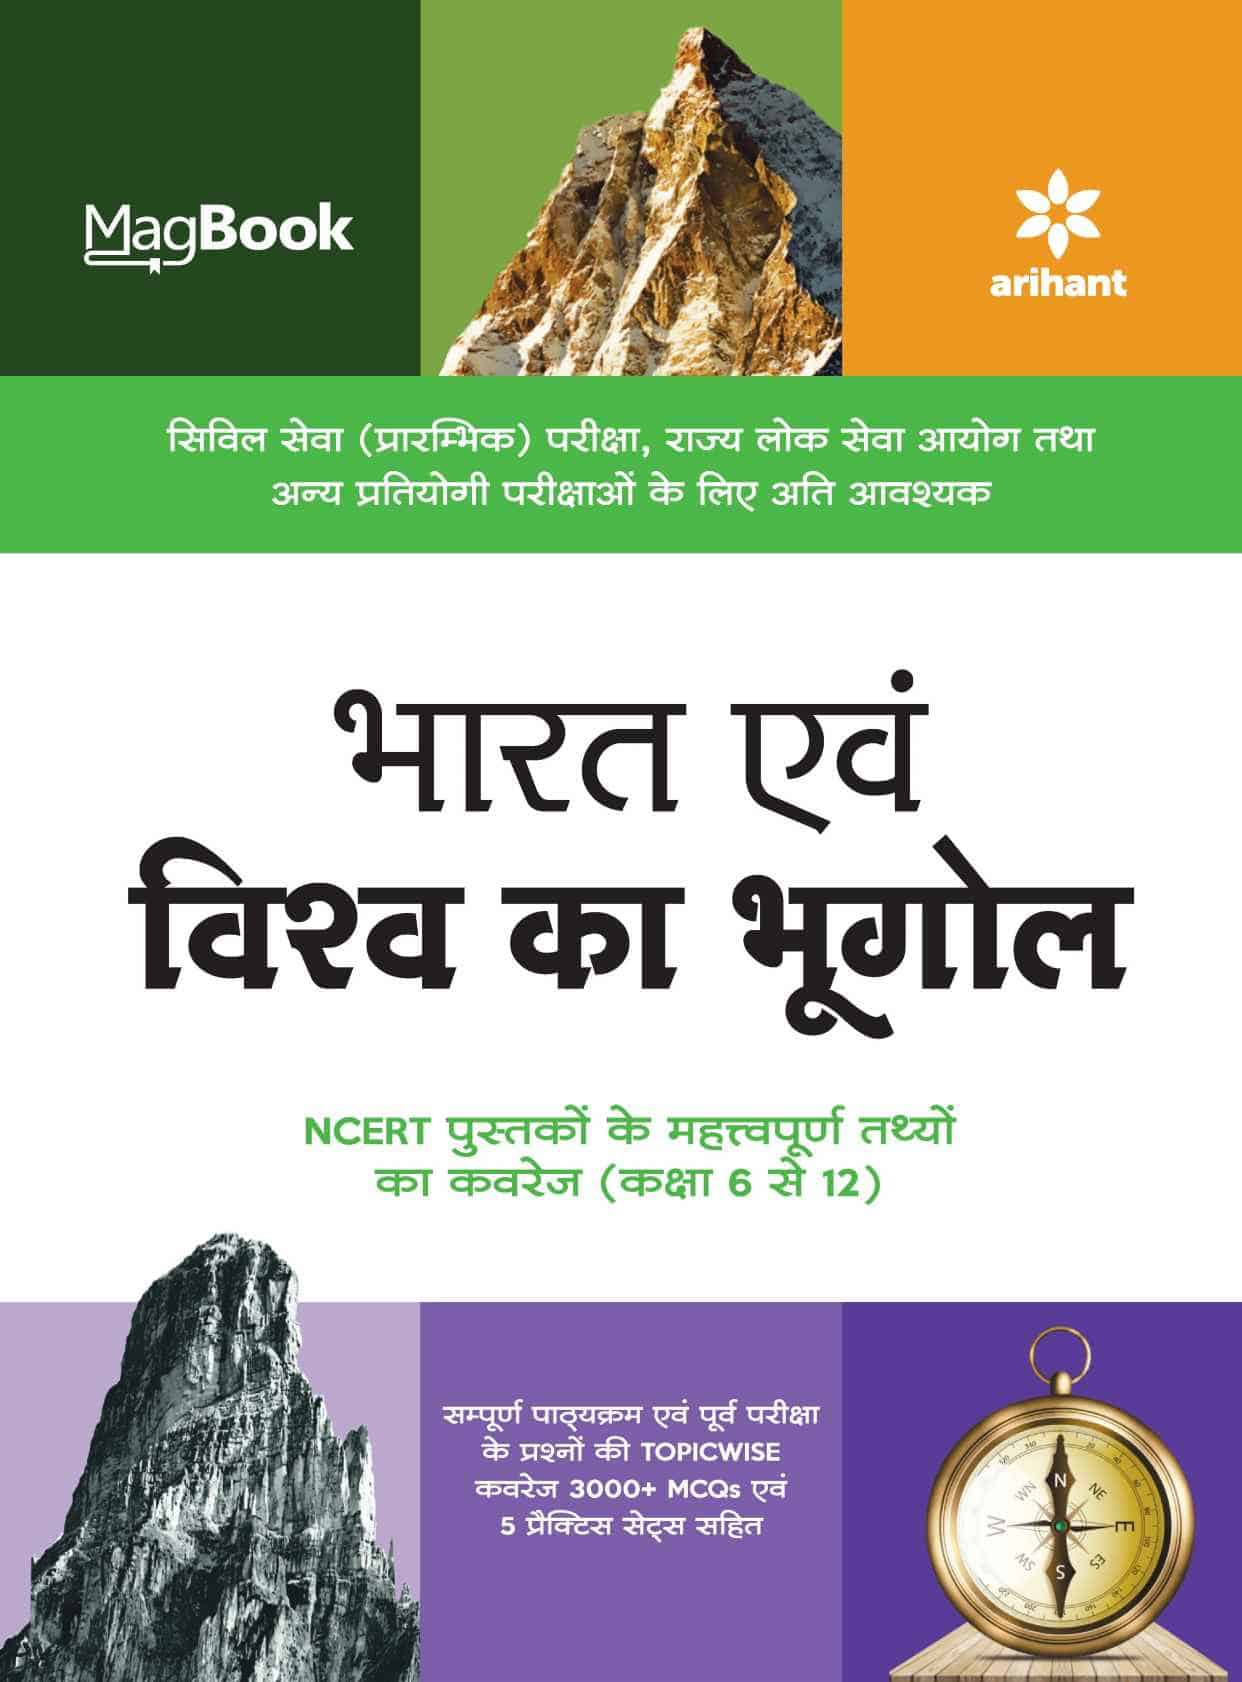 Arihant MagBook Indian Geography PDF [Hindi Edition]